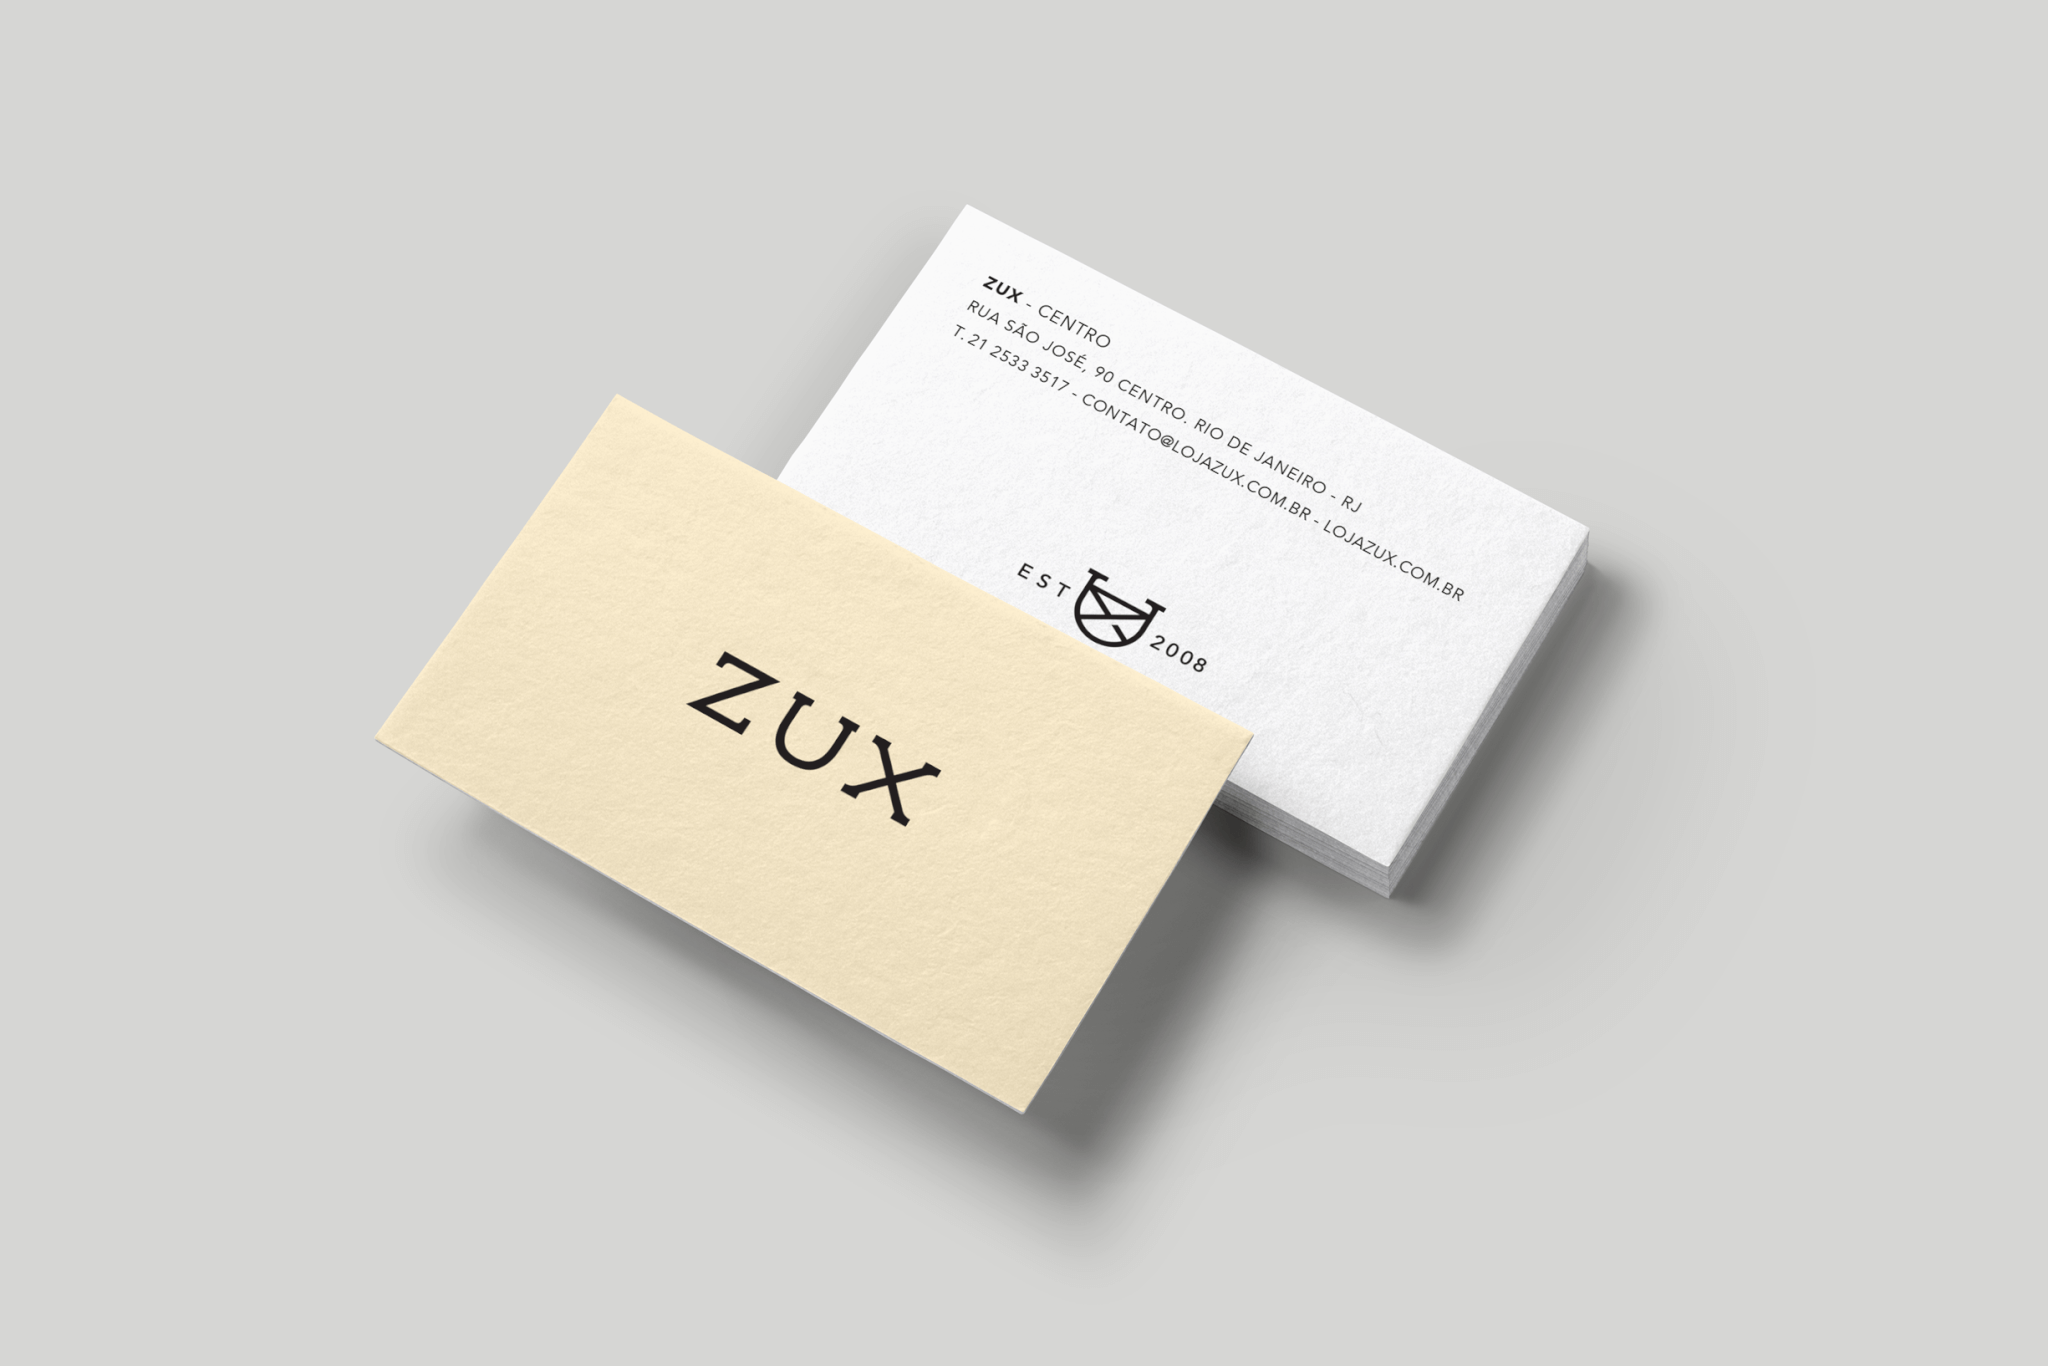 Zux-012